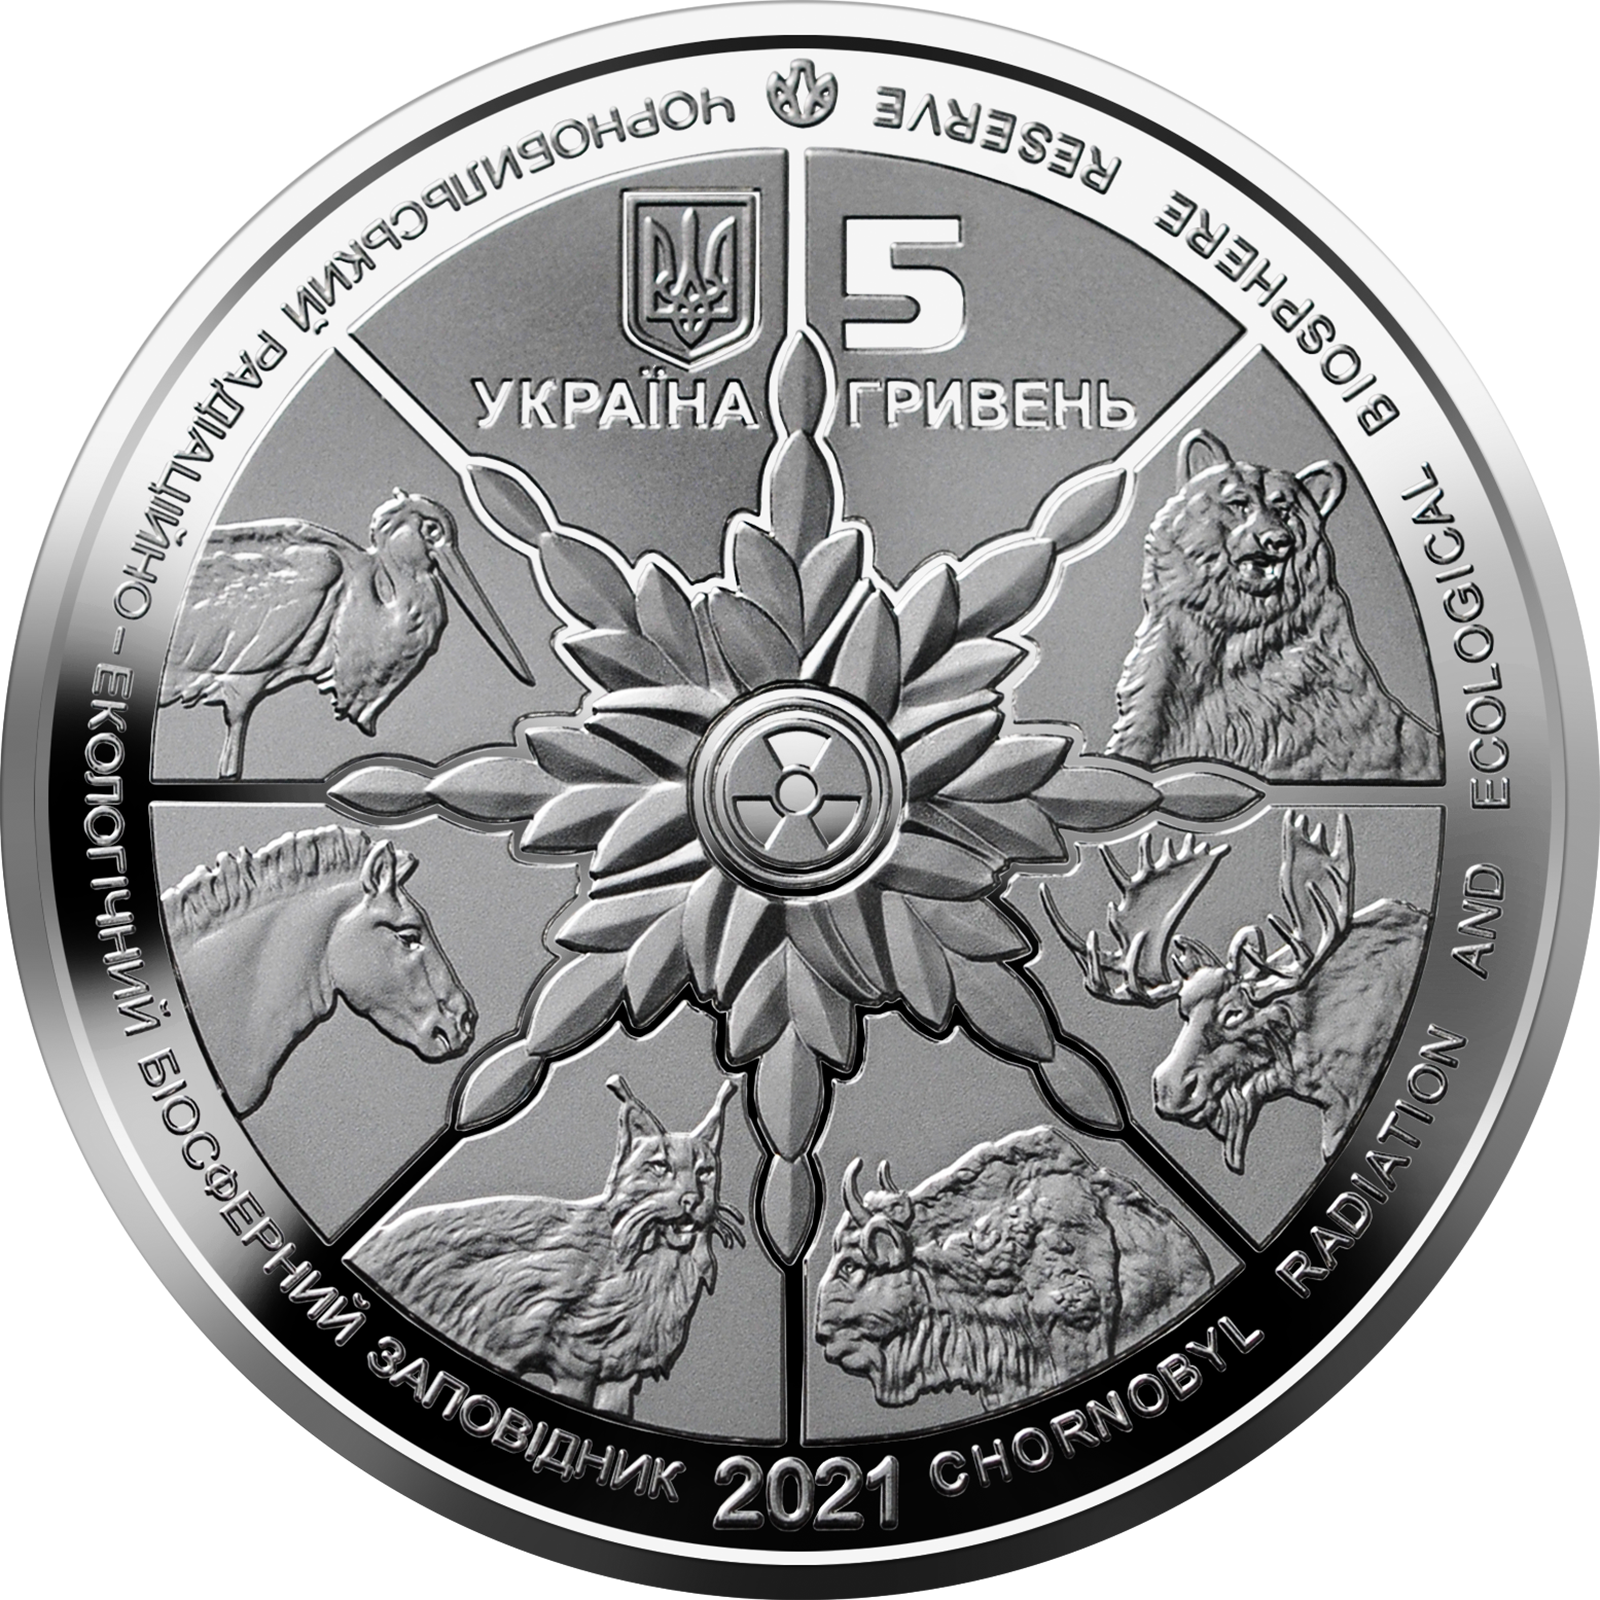 Сегодня НБУ вводит в оборот новую монету номиналом 5 грн.